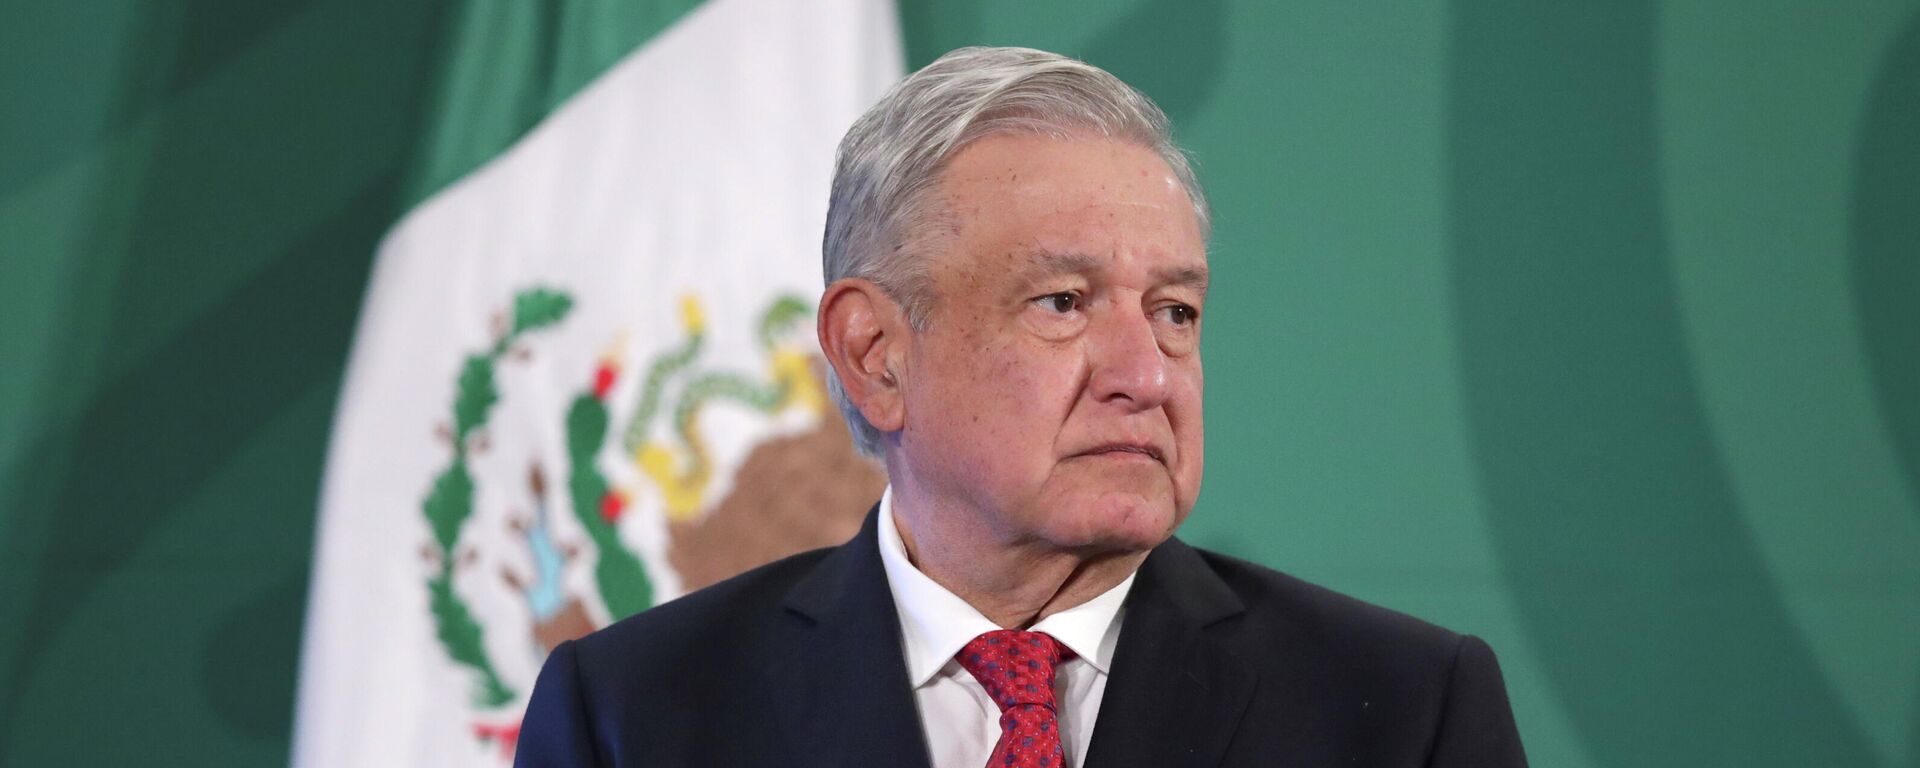 Andrés Manuel López Obrador, presidente de México - Sputnik Mundo, 1920, 10.03.2021